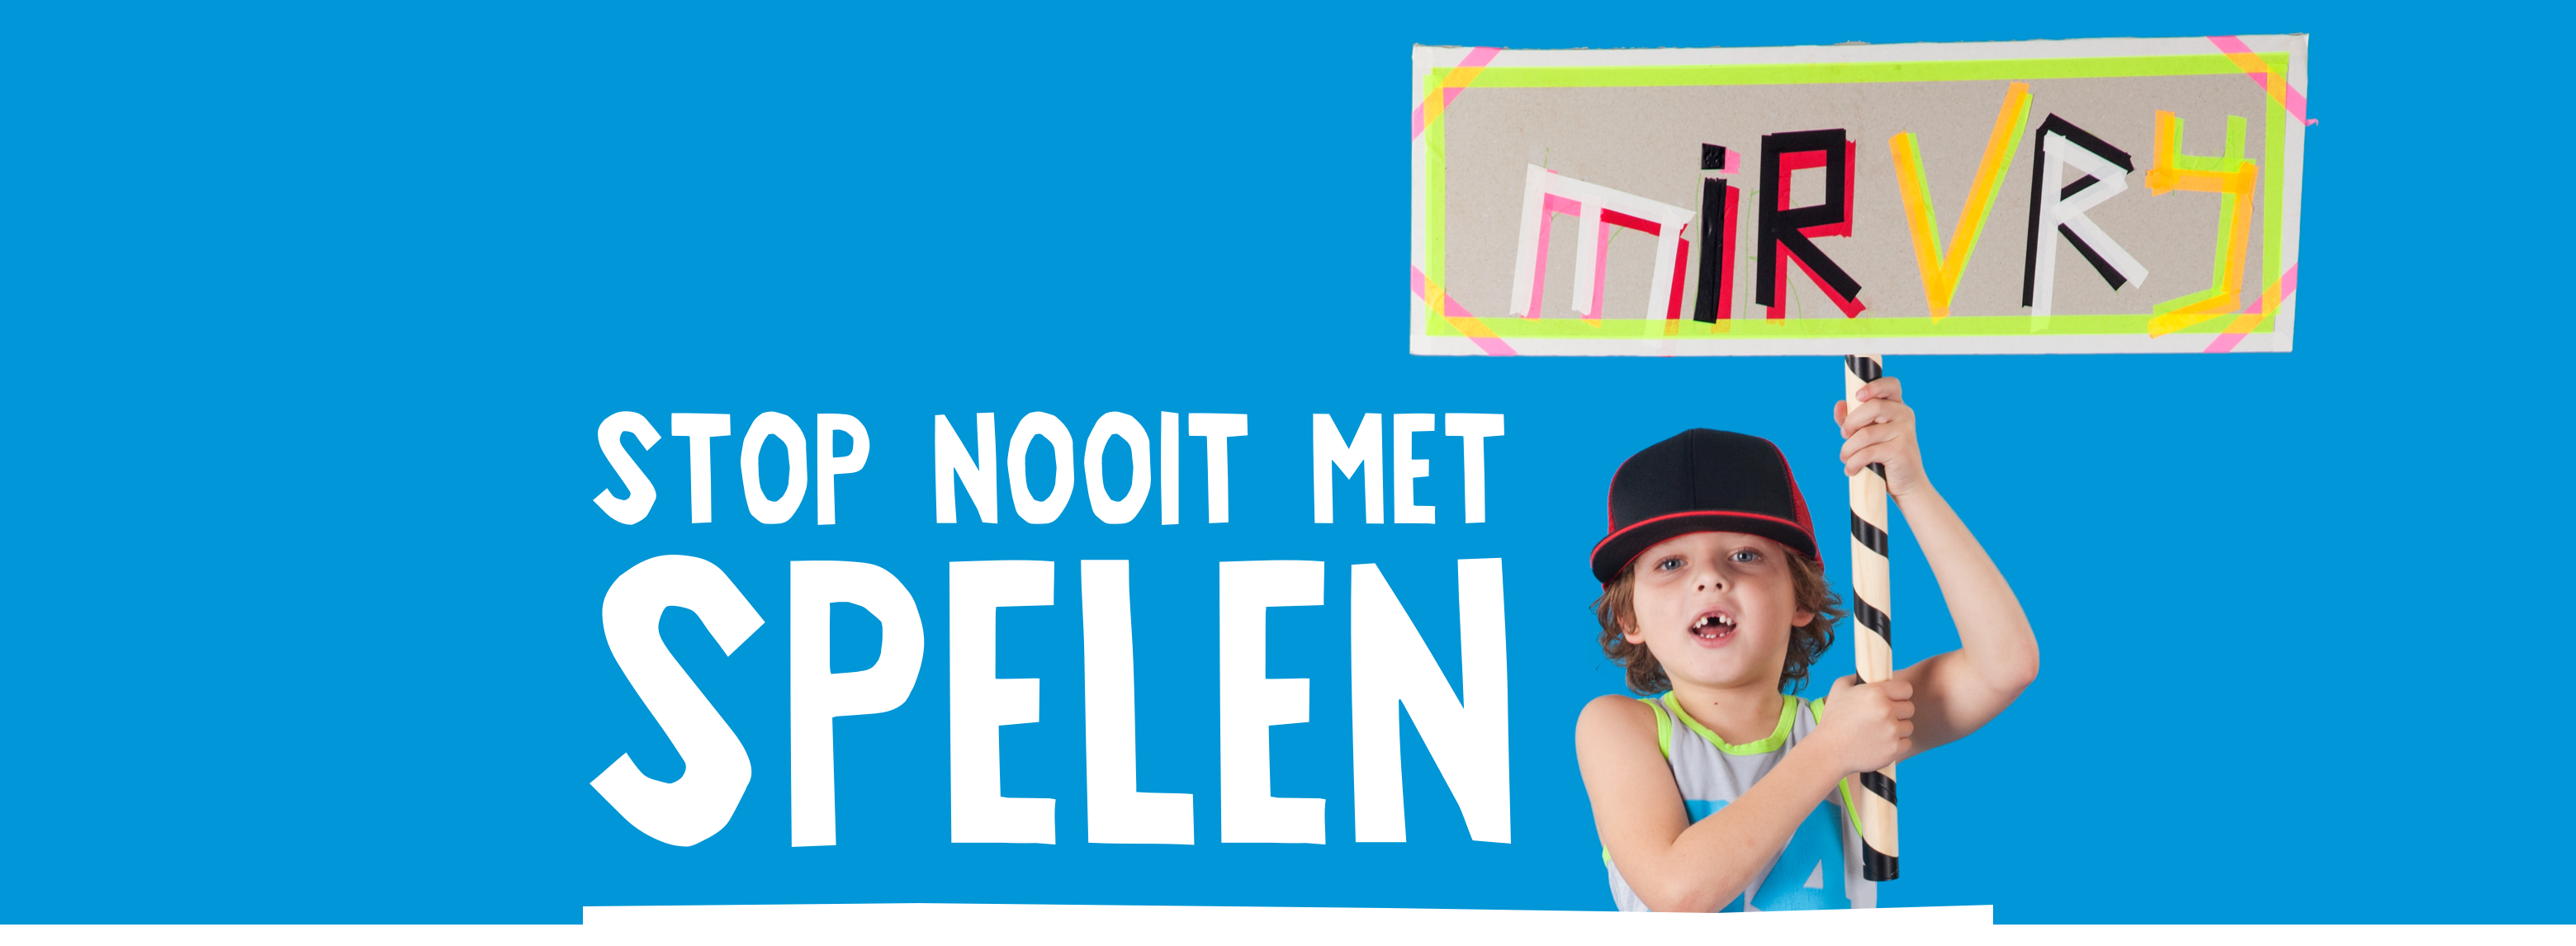 Afbeelding met tekst (Stop nooit met spelen!) met een jongetje ernaast. Het jongetje houdt bord vast waar op staat; Mir vrij, gemaakt van kleurig plakband.